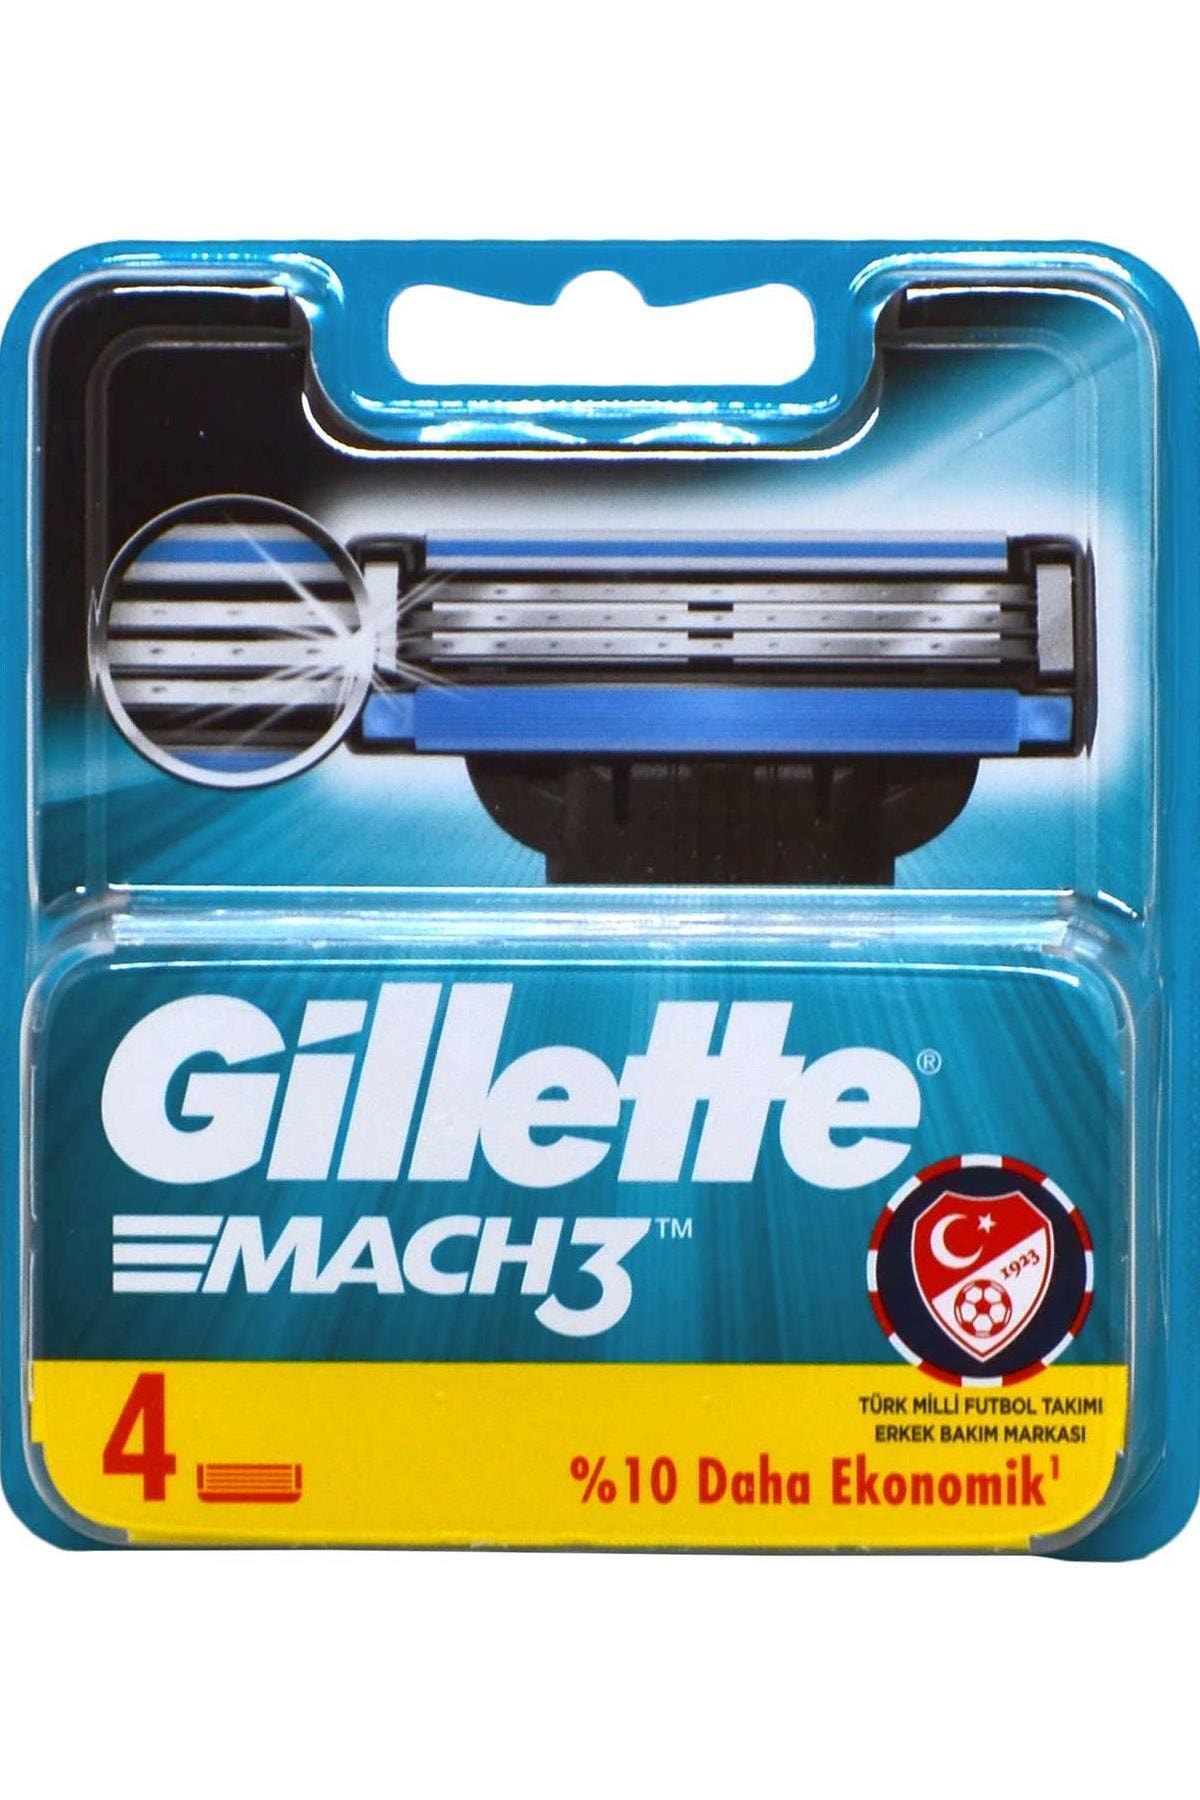 FLY BAZAAR Marka: Gillette Mach3 Yedek Tıraş Bıçağı 4'lü 3014260243531 Kategori: Tıraş Bıçağı